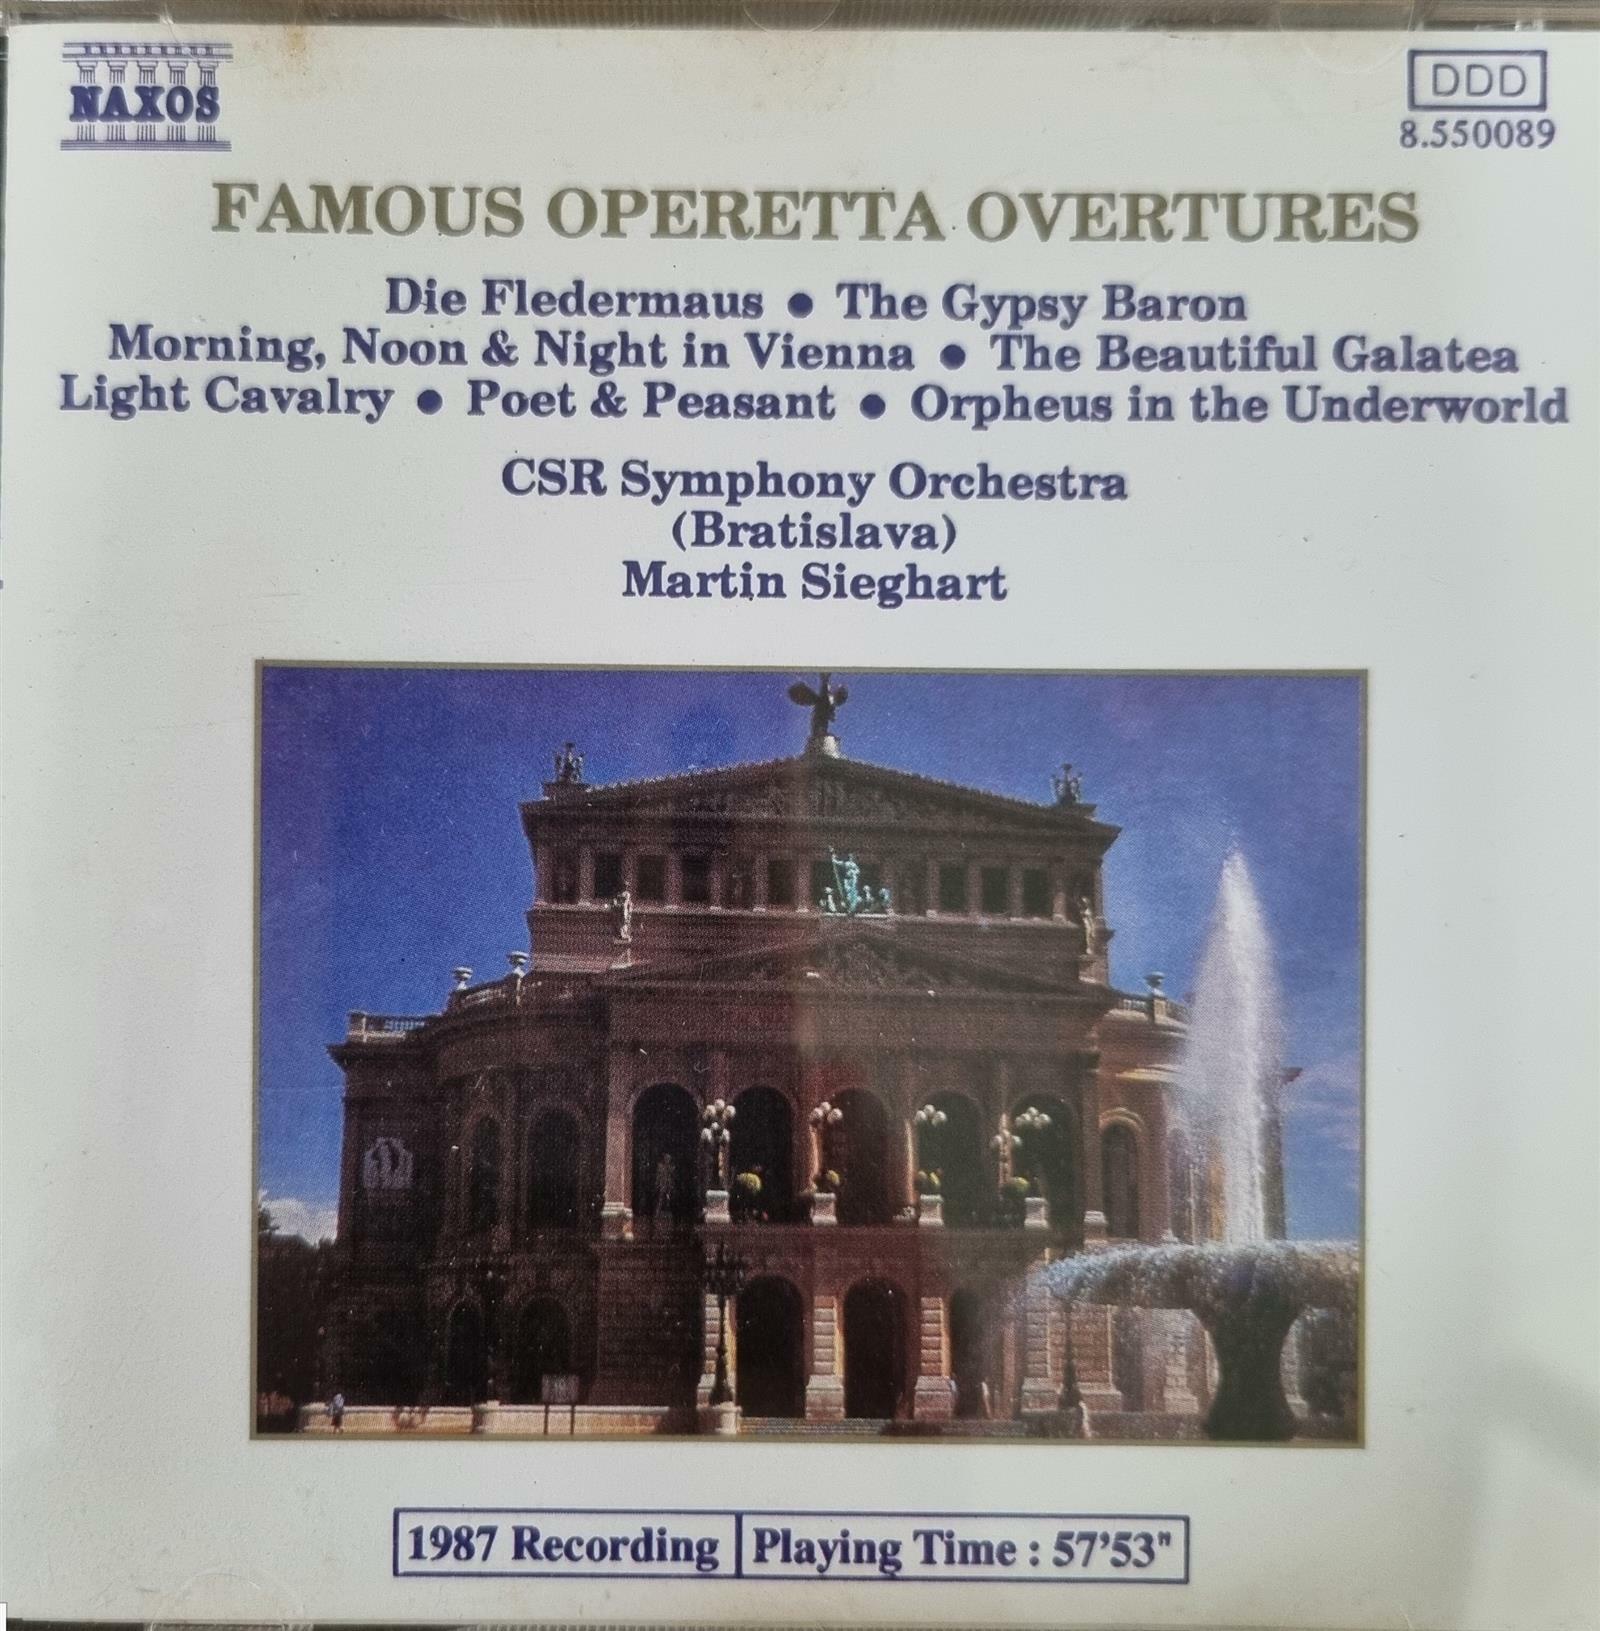 [중고] [CD 수입] Famous Operetta Overtures - Die Fledermaus, The Gypsy Baron, Morning Noon & Night in Vienna